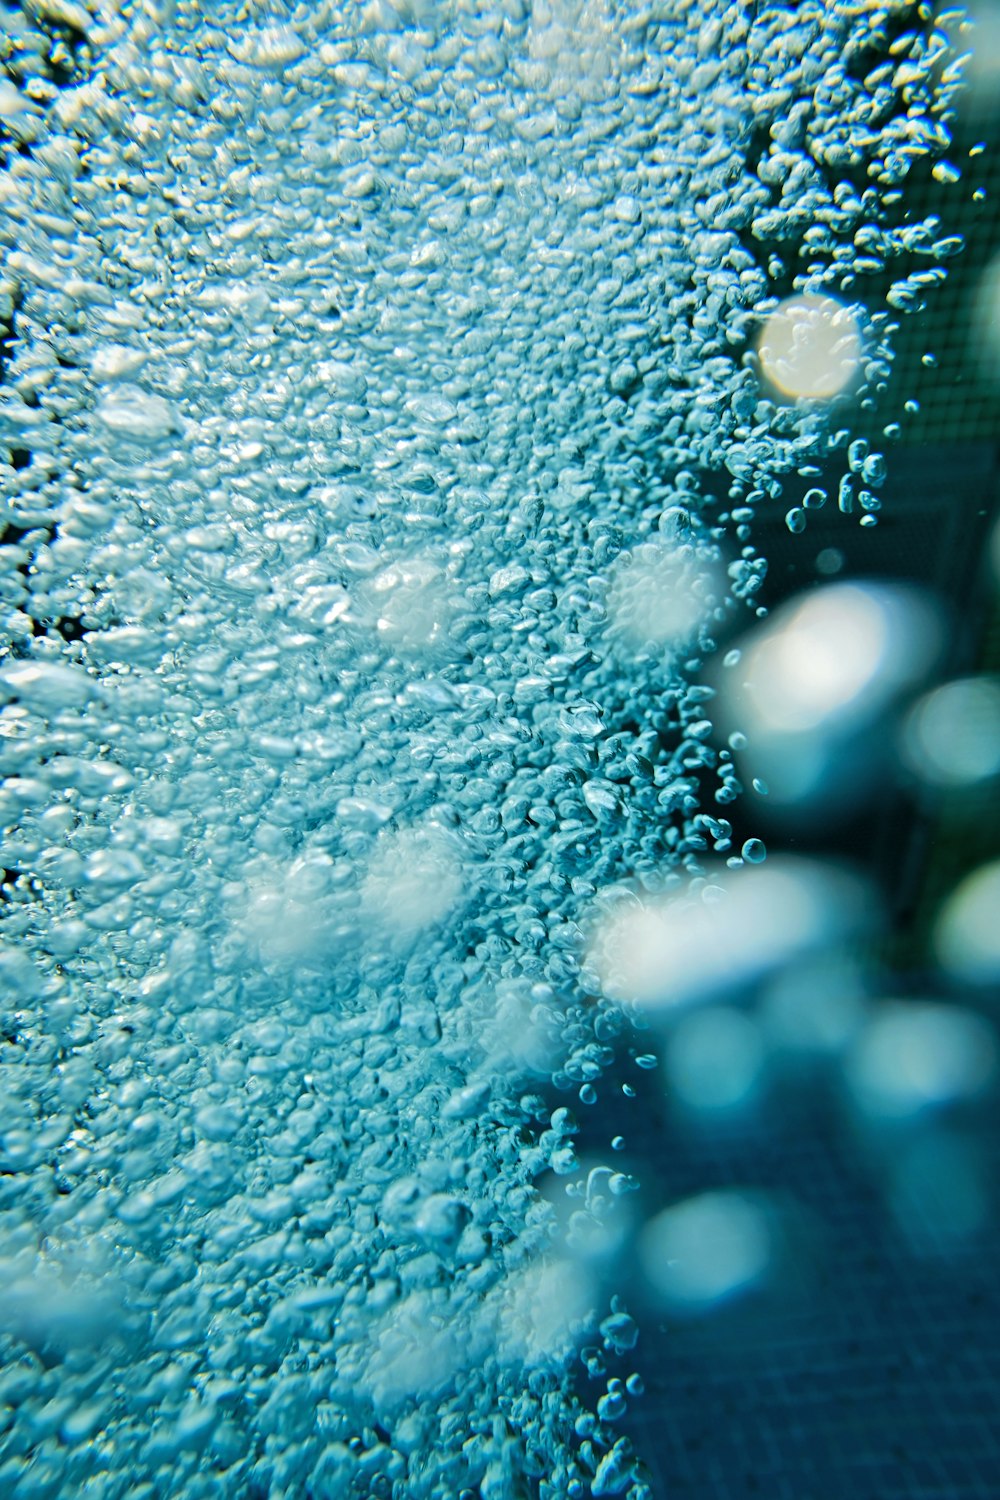 goccioline d'acqua sulla superficie del vetro